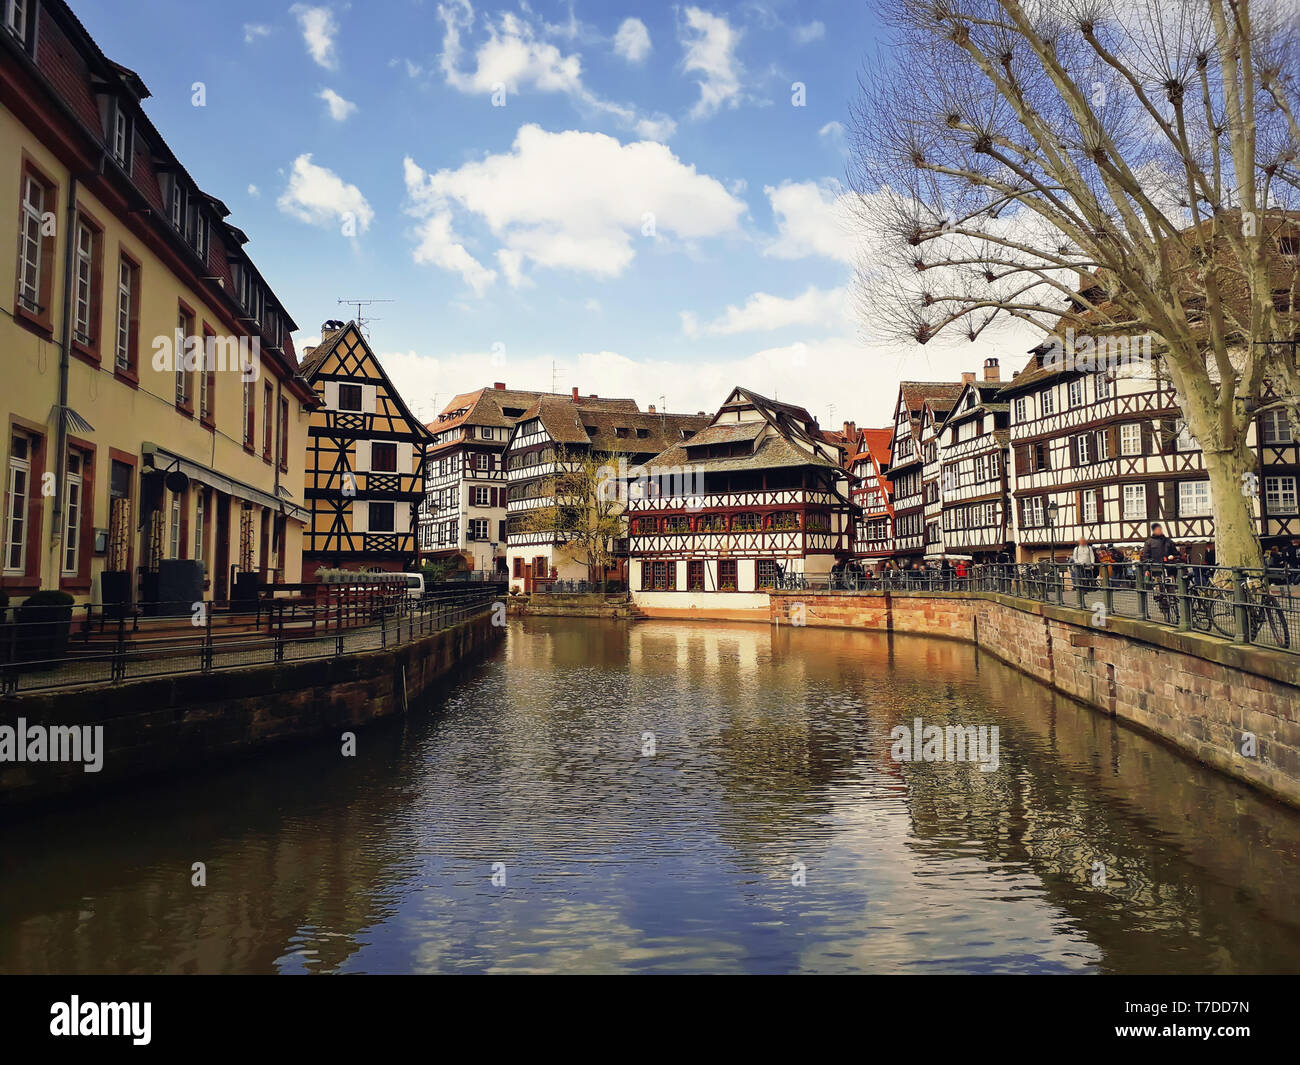 Ville romantique colorés Strasbourg, France, Alsace. Maisons à colombages traditionnelle près de la rivière. La maison médiévale façade, ville historique. Beau cadre idyllique Banque D'Images